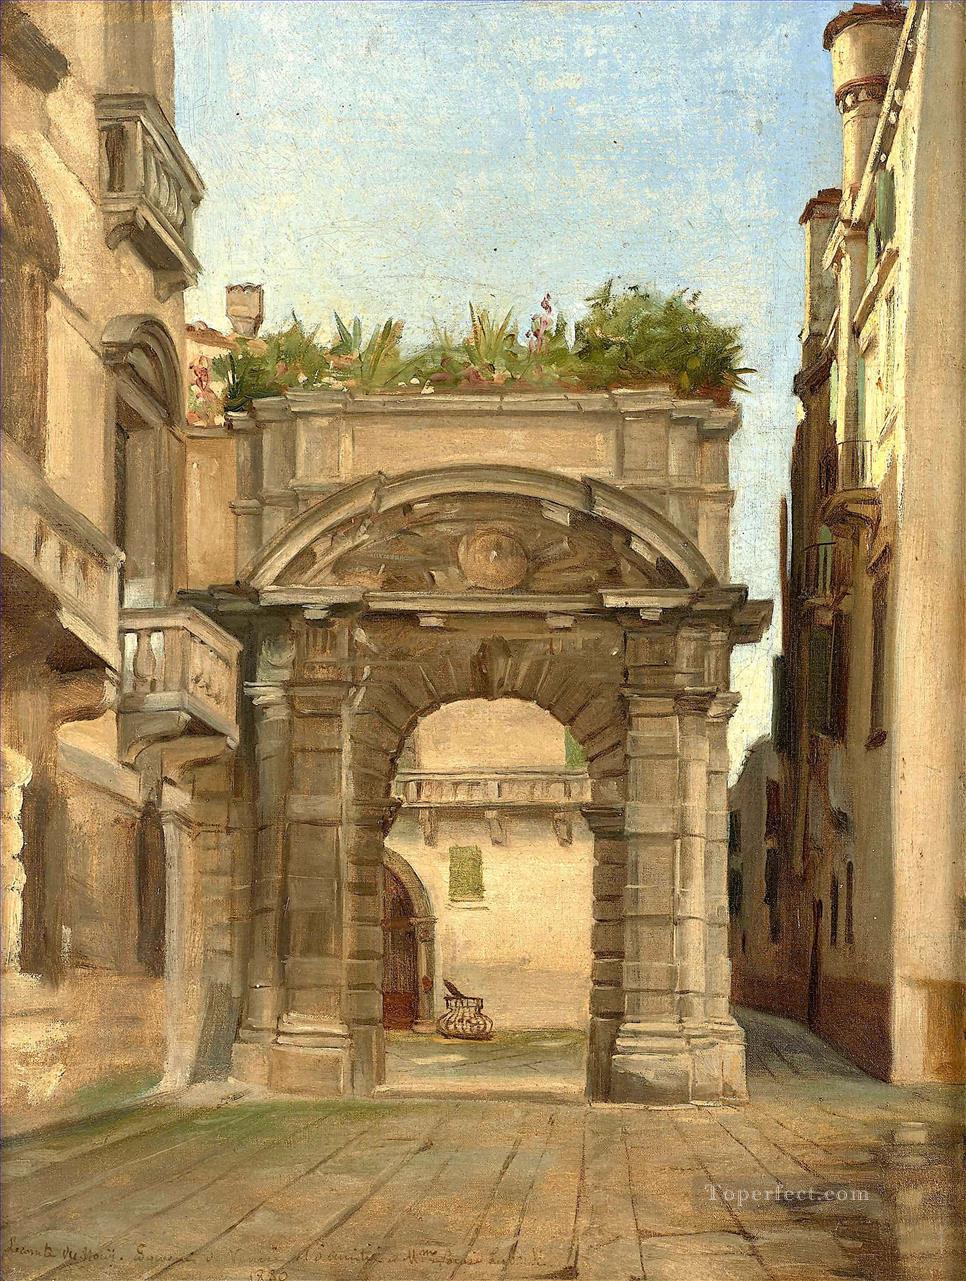 サン・サルヴァトール ヴェネツィアのモロシーニ宮殿への入り口 ジャン・ジュール・アントワーヌ・ルコント・デュ・ヌイ オリエンタリスト・リアリズム油絵